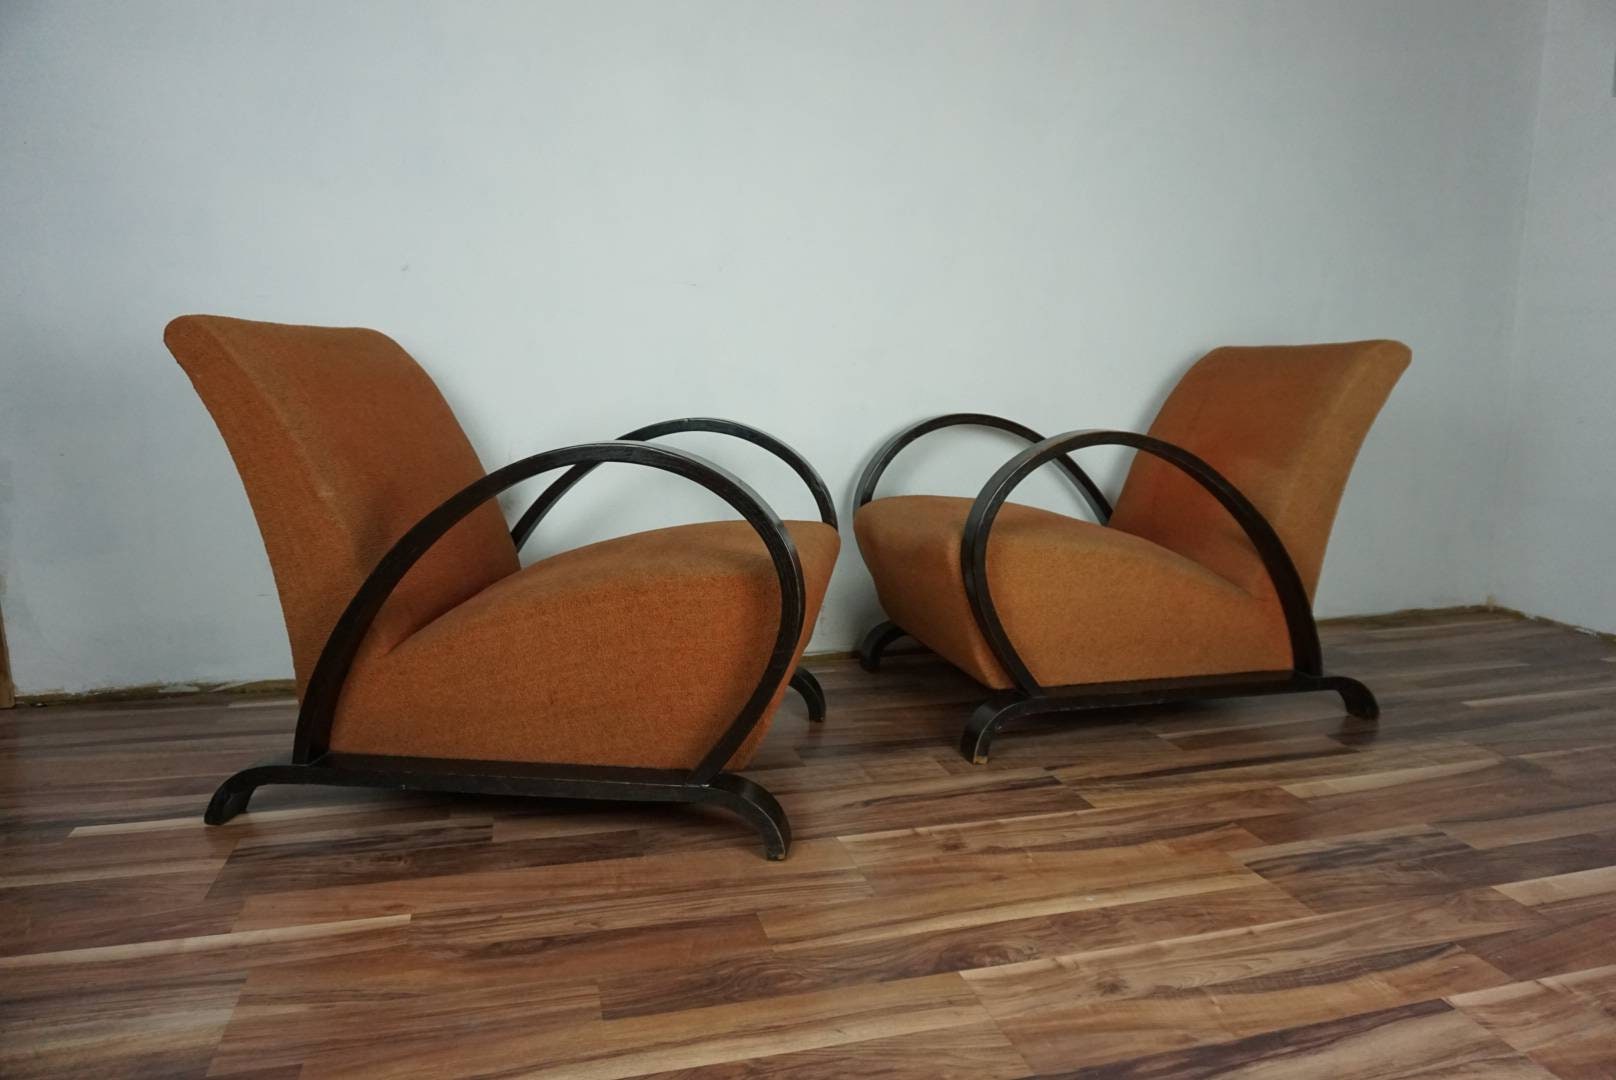 2 dos sillones antiguos estilo art decó. Dos butacas estilo modernista.  Silla descalzadora antigua art decó.